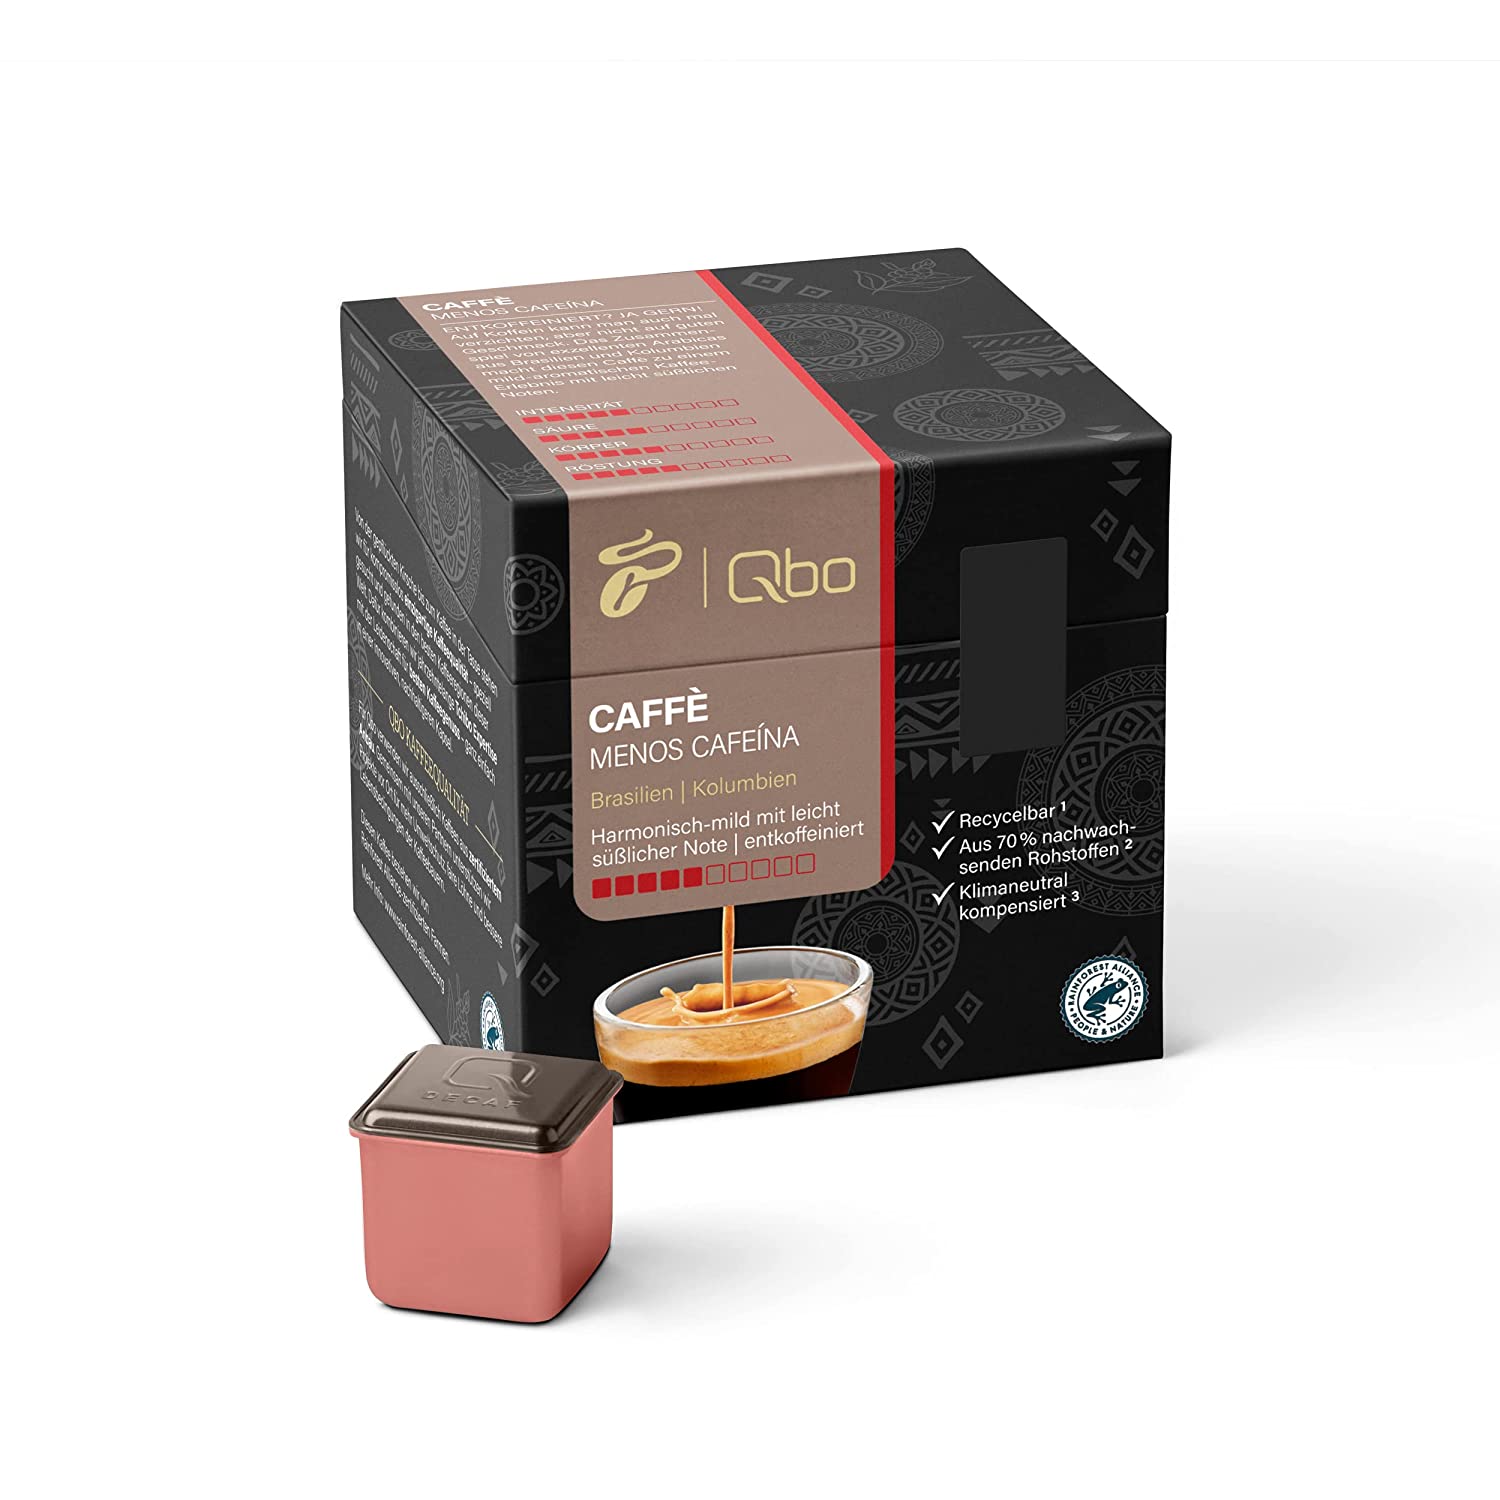 Tchibo Qbo Caffè Menos Cafeína Premium Kaffeekapseln, 27 Stück (Caffè, Intensität 5/10, mild und süßlich, entkoffeiniert), nachhaltig, aus 70% nachwachsenden Rohstoffen & klimaneutral kompensiert